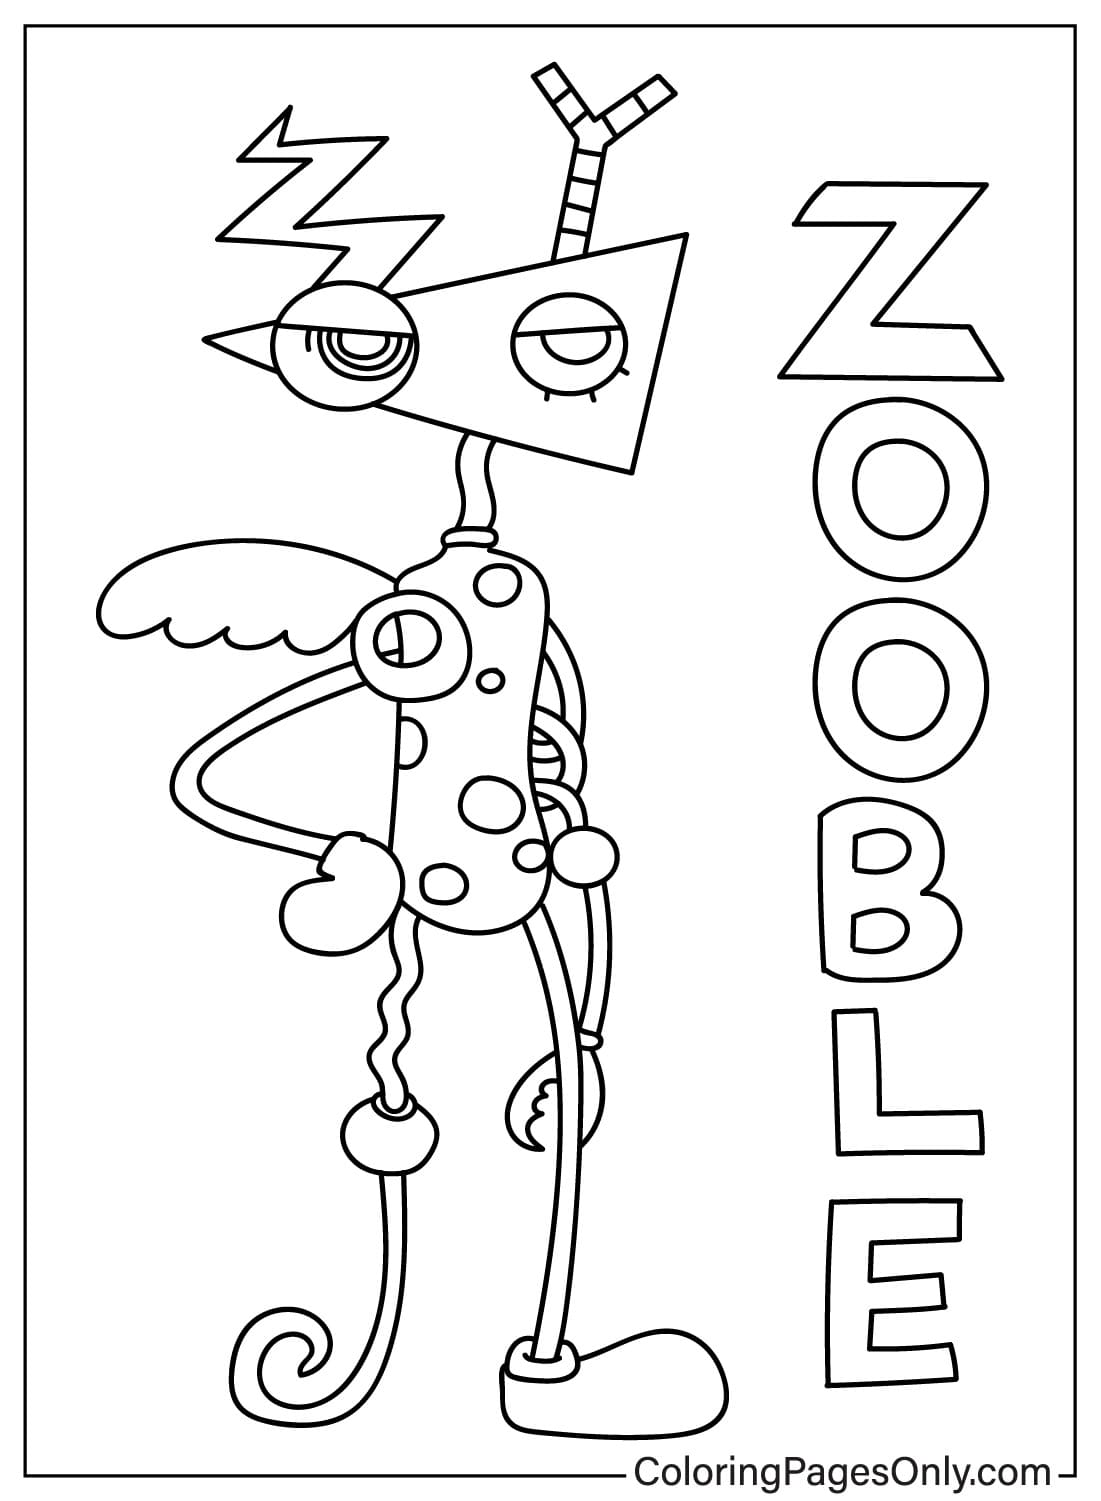 Zooble kleurplaat van Zooble